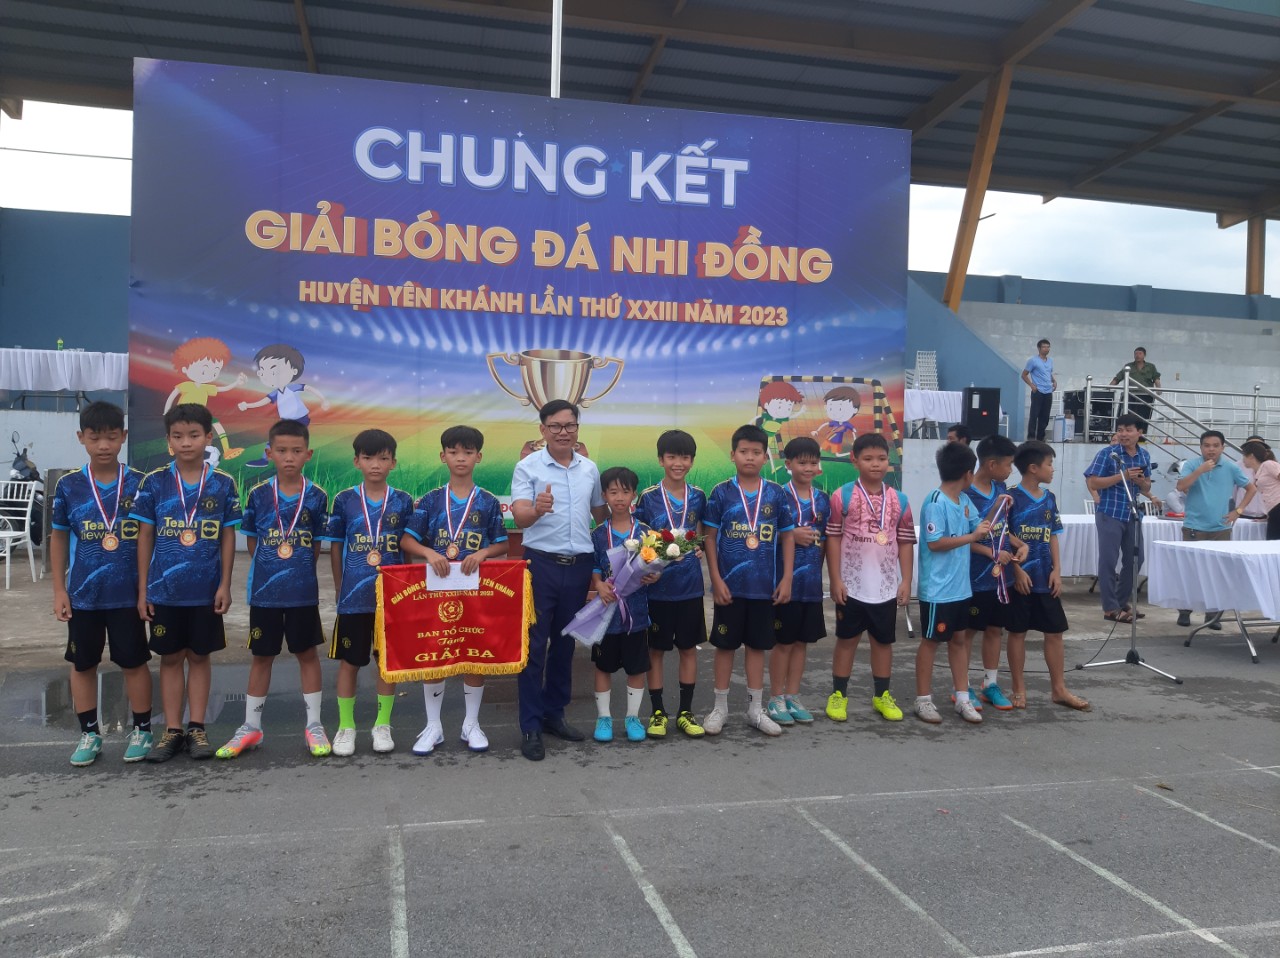 Đội bóng nhi đồng xã Khánh Nhạc đạt giải ba tại giải bóng đá nhi đồng huyện Yên Khán lần thứ 23 năm 2023.